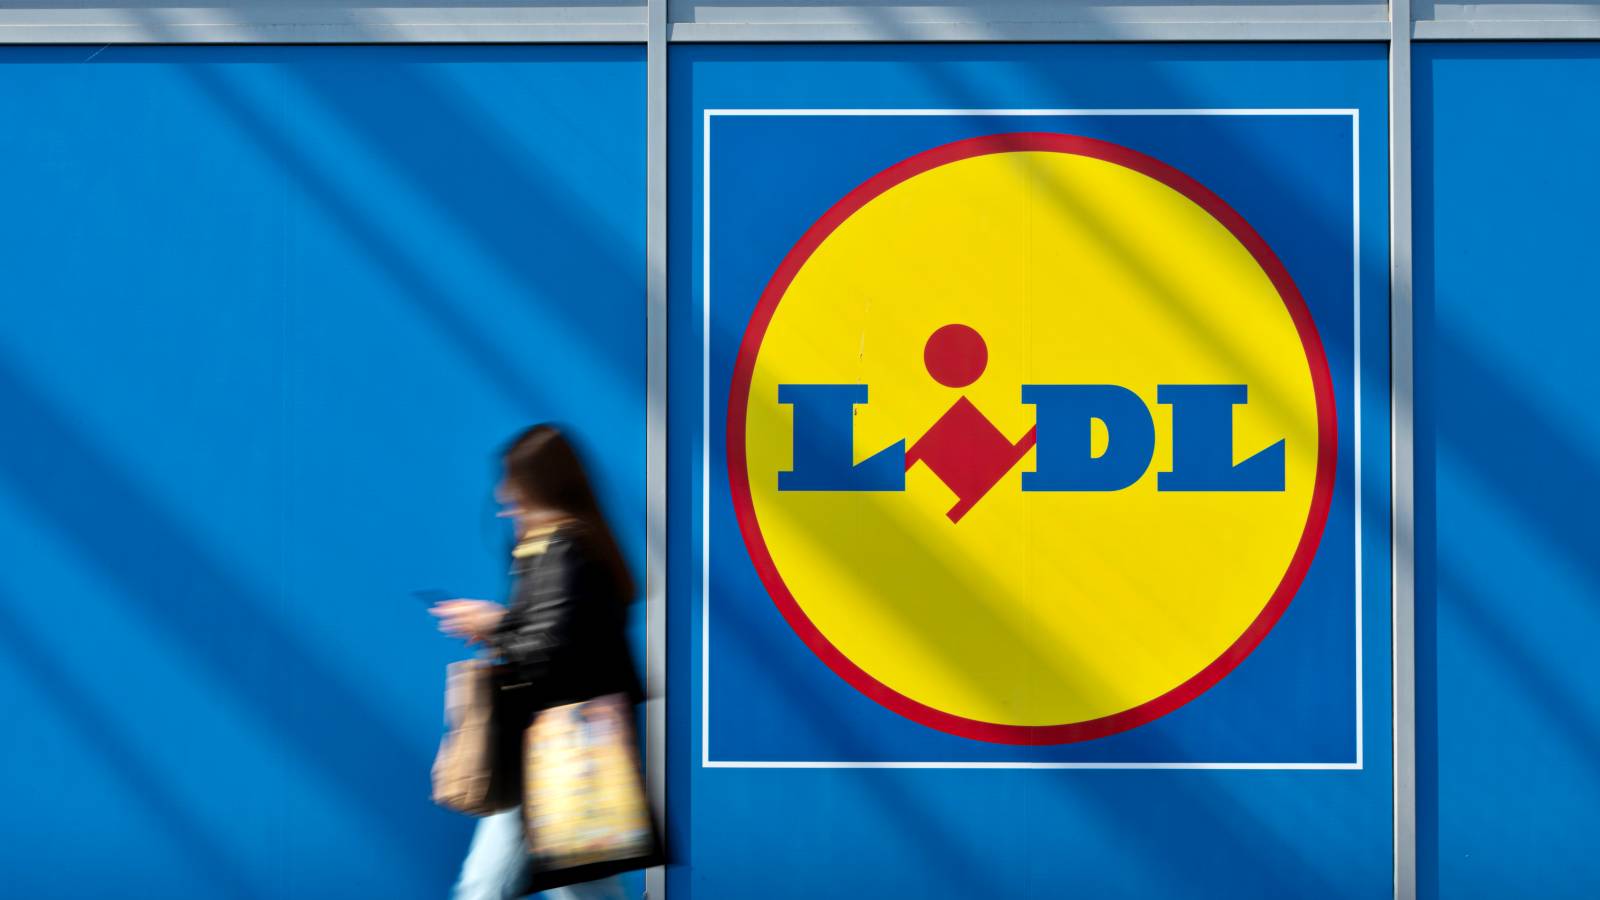 LIDL Romania cambia nuovi negozi rivelati al paese dei clienti